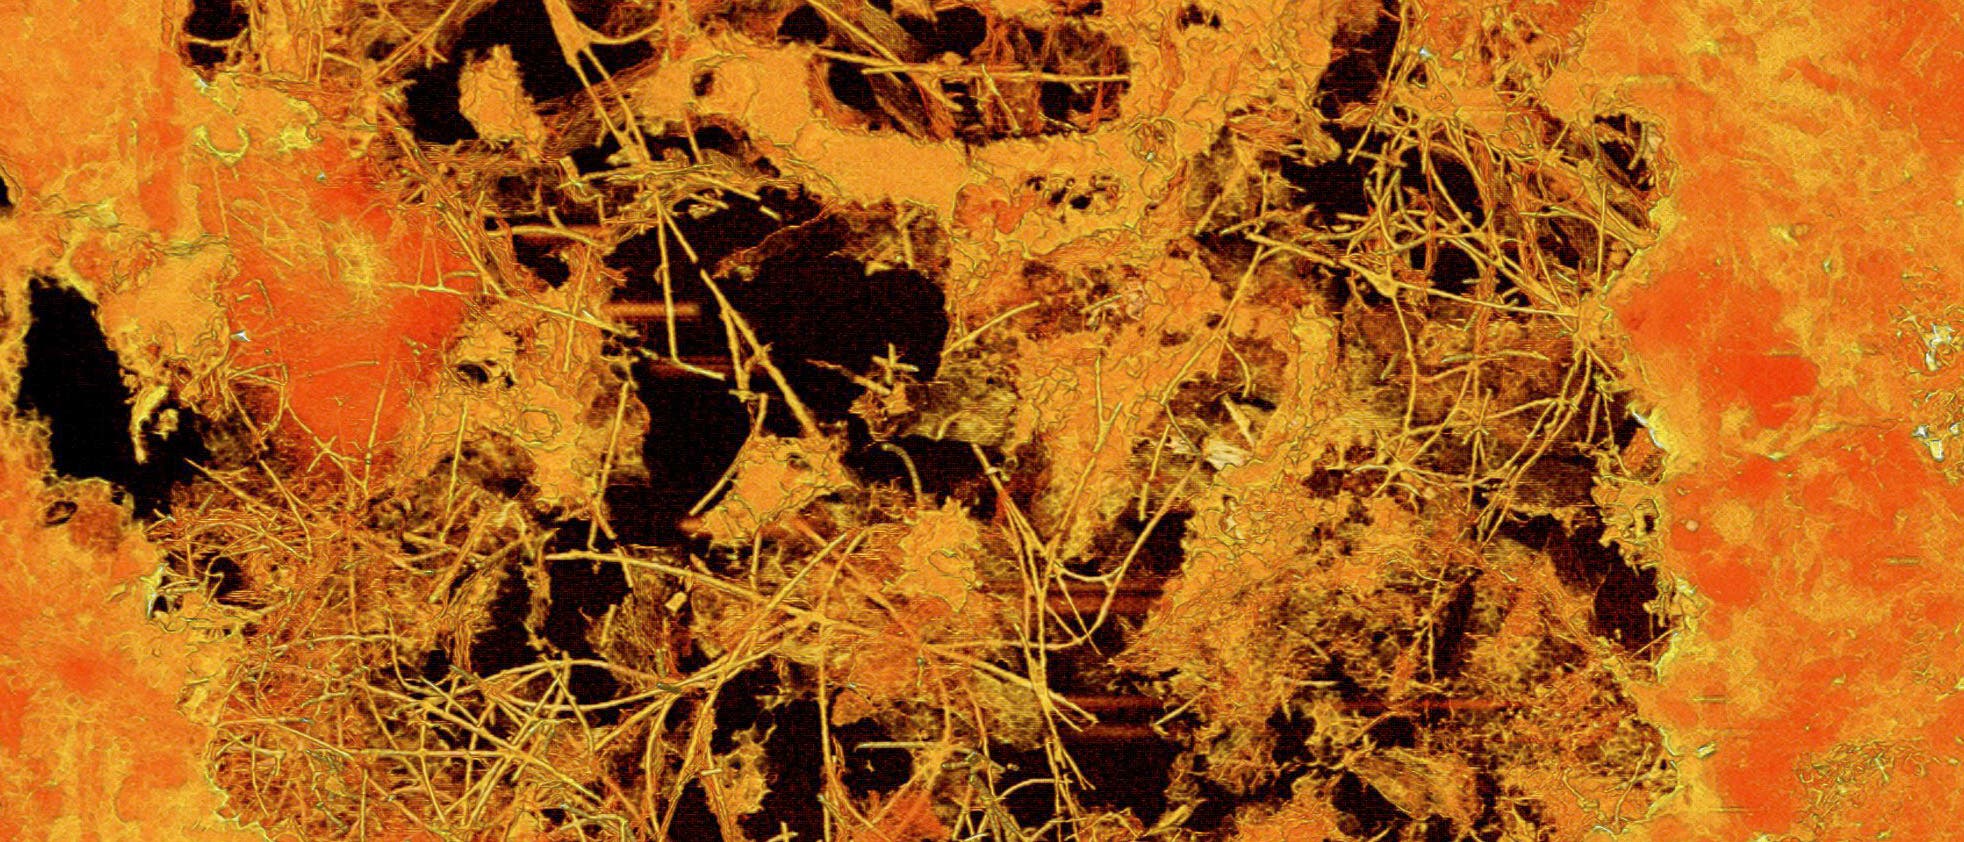 Röntgentomografische Abbildung des fossilen Pilzgeflechts in der etwa 0,8 Millimeter messenden Pore. Die Fossilien sind in Mineralen eingeschlossen, die Jahrmillionen nach der Entstehung des umgebenden Basalts aus zirkulierenden Tiefenwässern auskristallisierten.